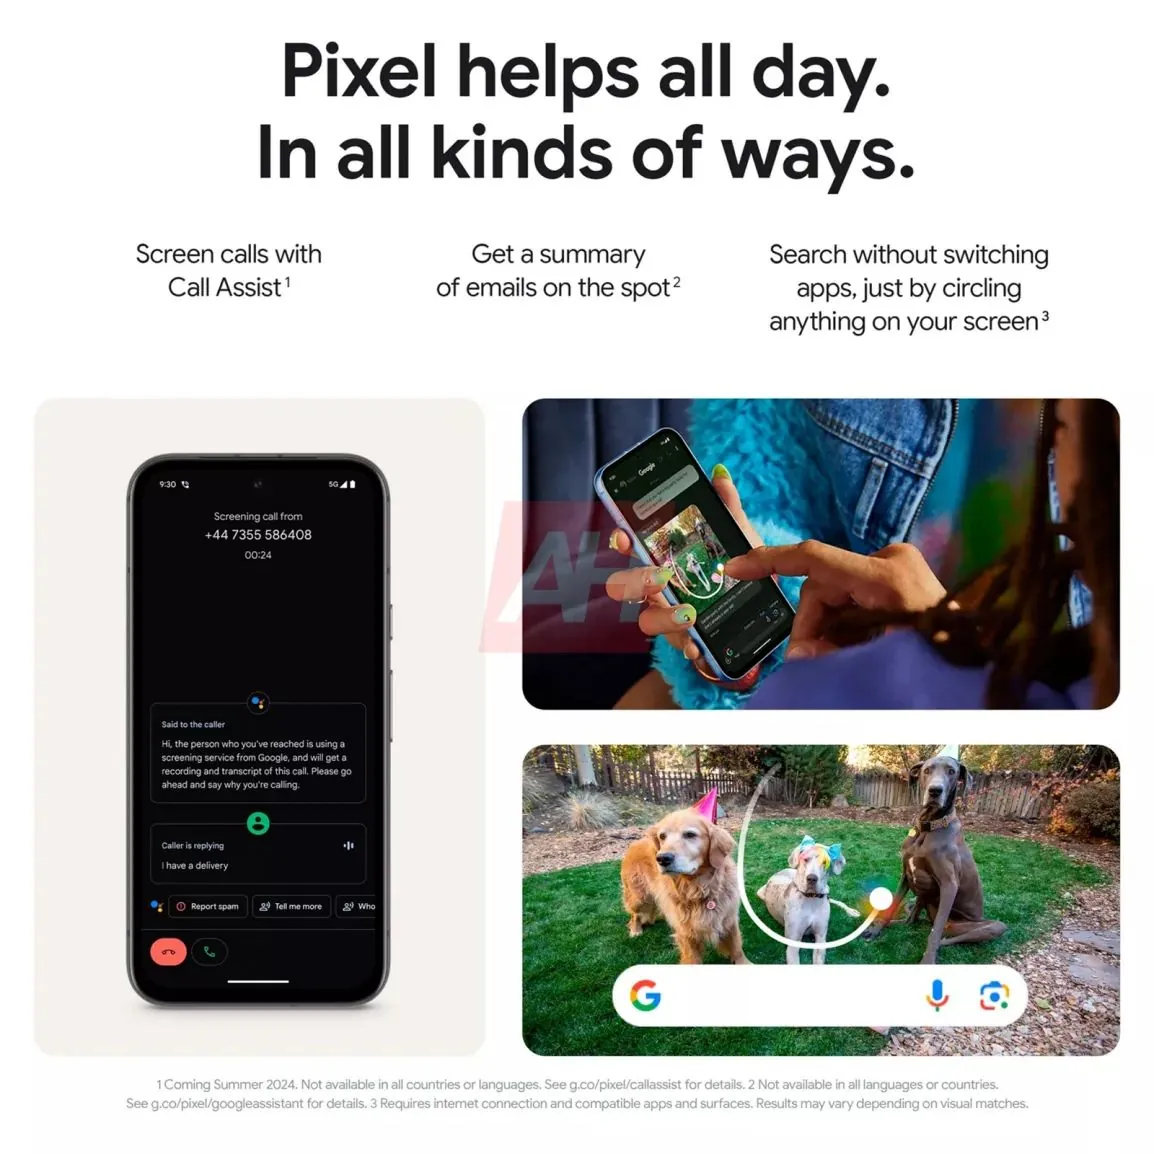 谷歌 Pixel 8a 手机可选 128/256GB 存储空间版本，售 499 美元起